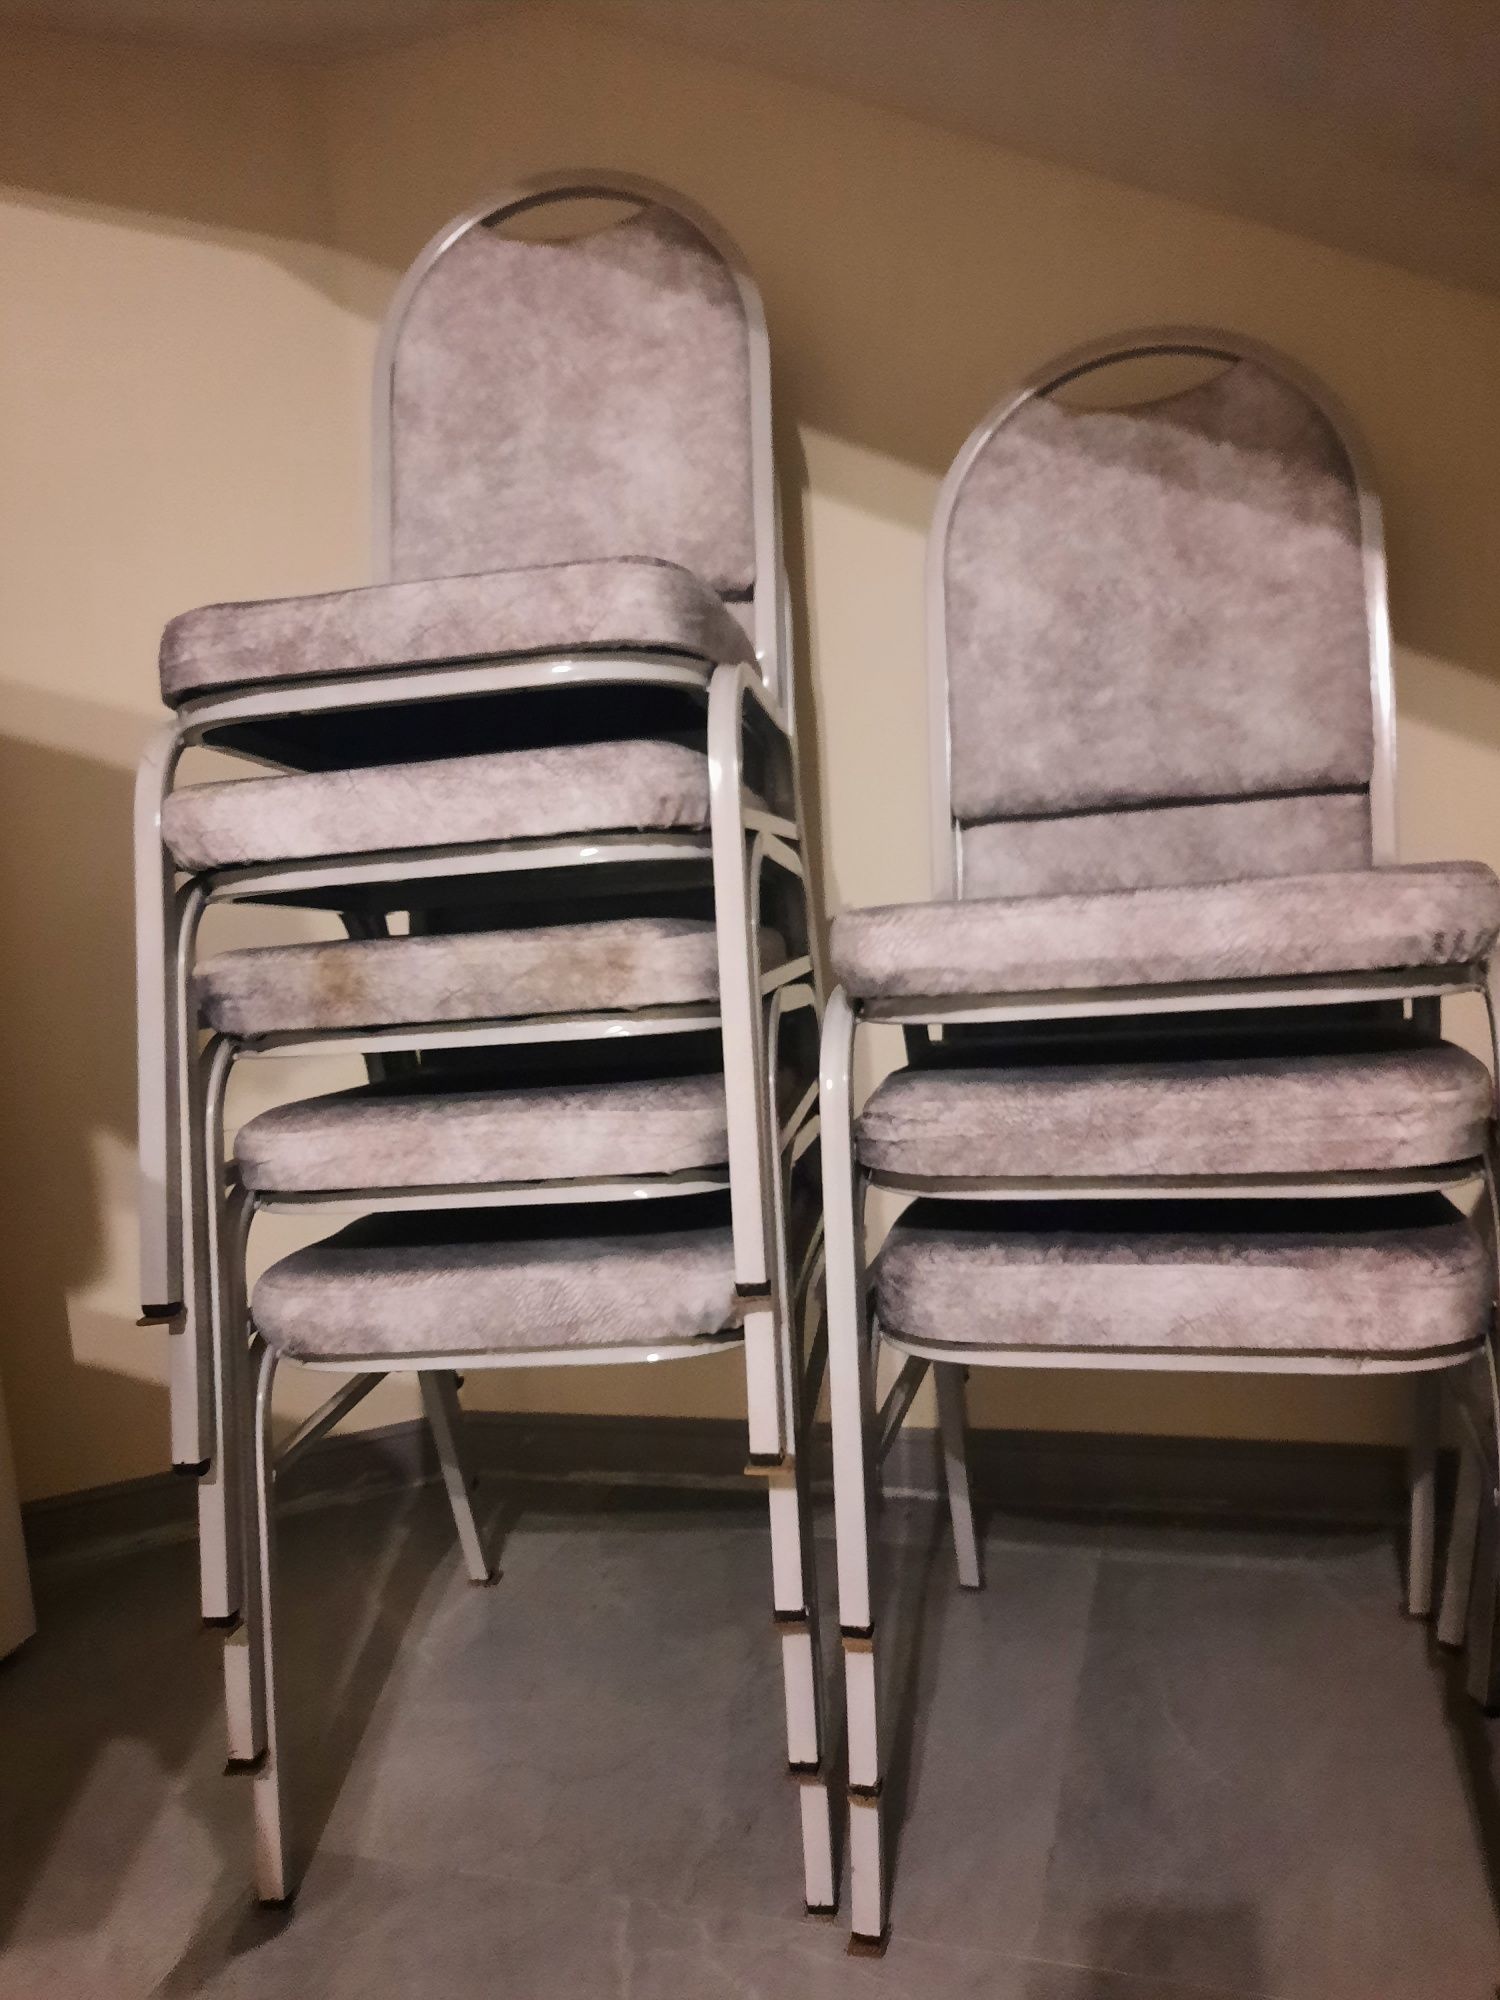 Новые стулья крепкие серого цвета, складываются друг в друга